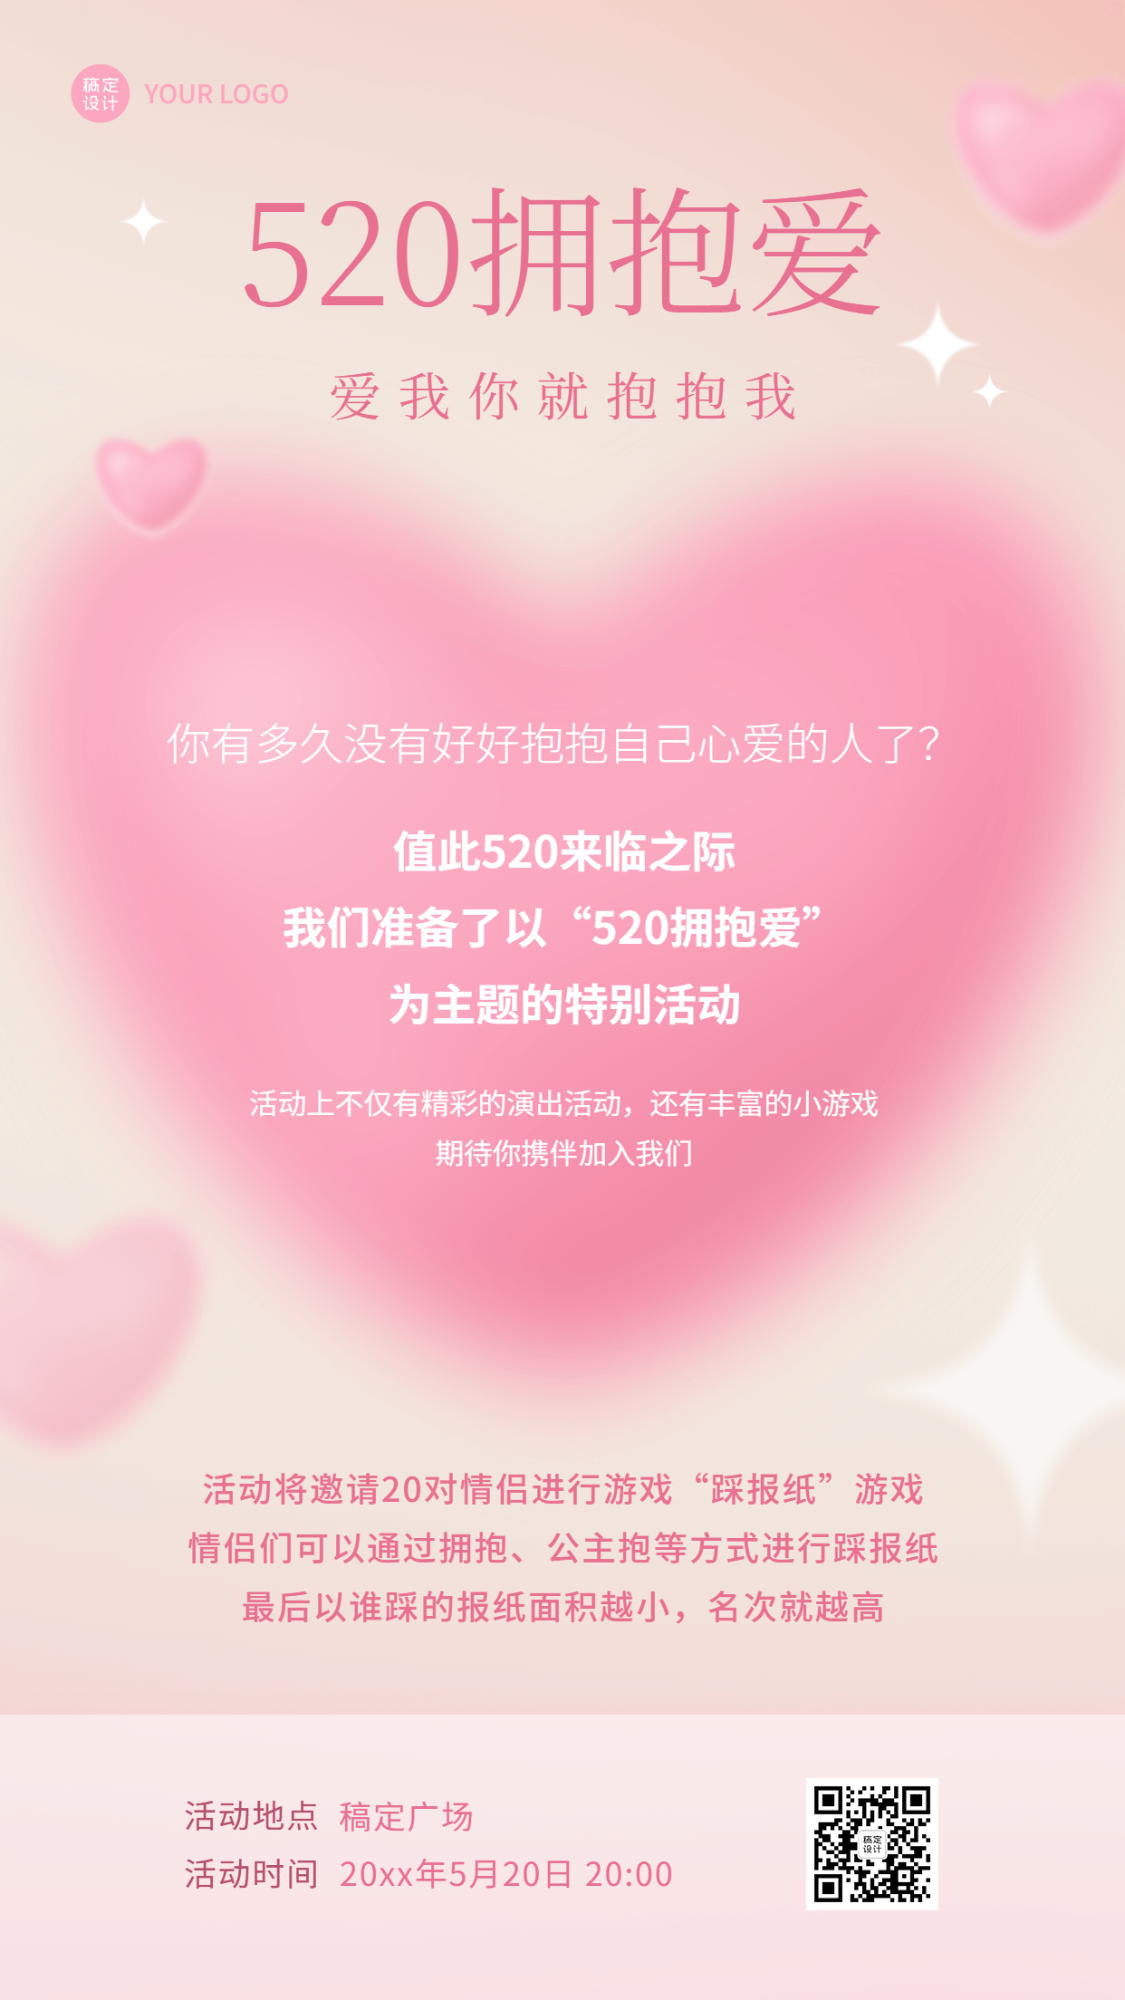 520情人节节日活动约会主题排版手机海报预览效果